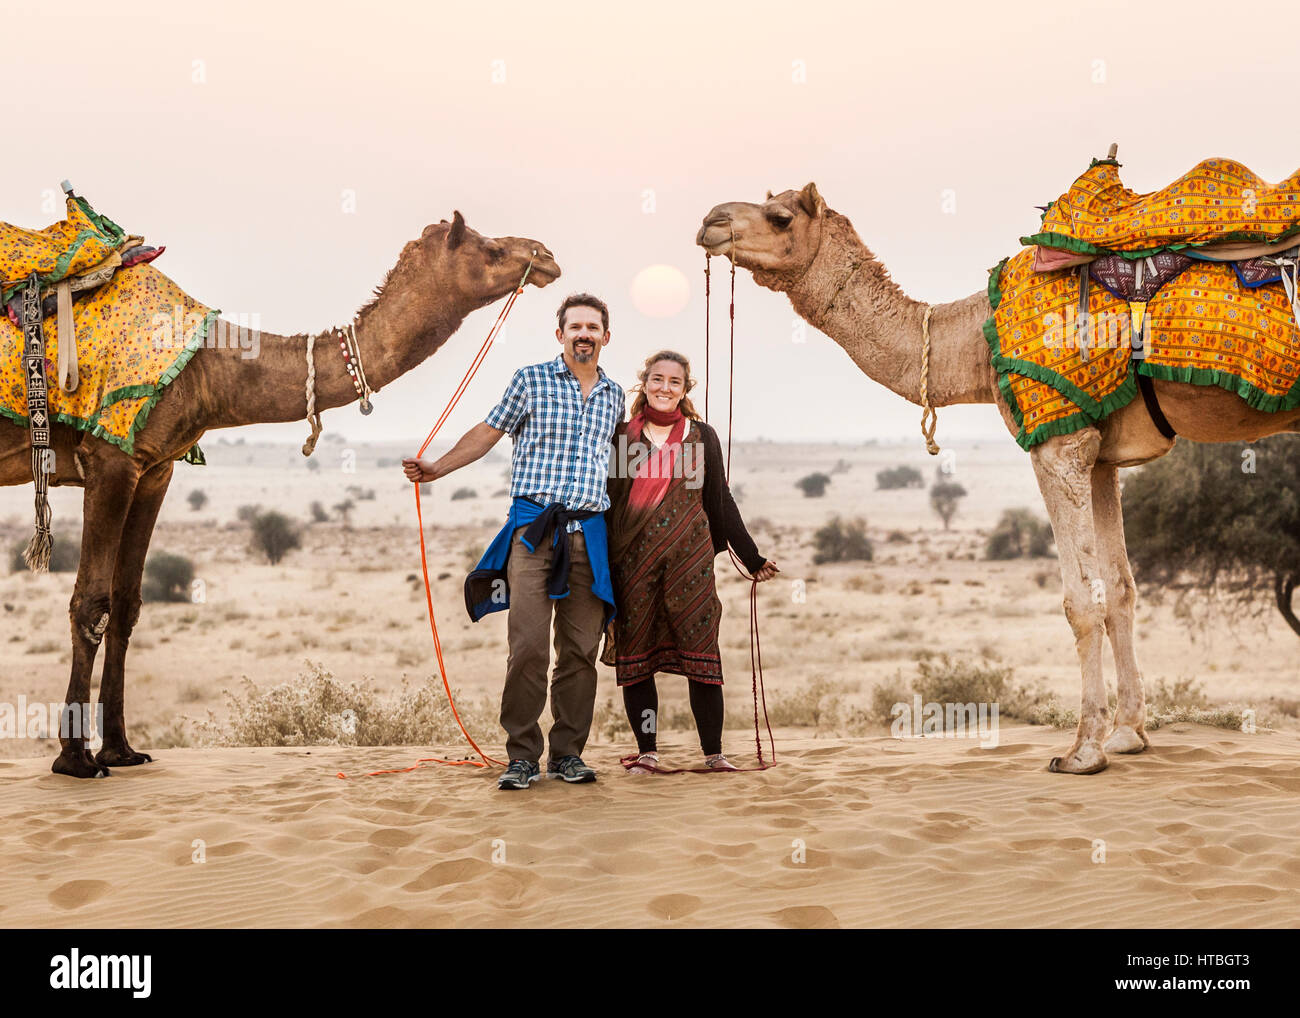 Ein Mann und eine Frau hält ihre Kamele herrscht beim posieren für ein Foto in der Thar-Wüste bei Sonnenuntergang, Rajasthan, Indien. Stockfoto